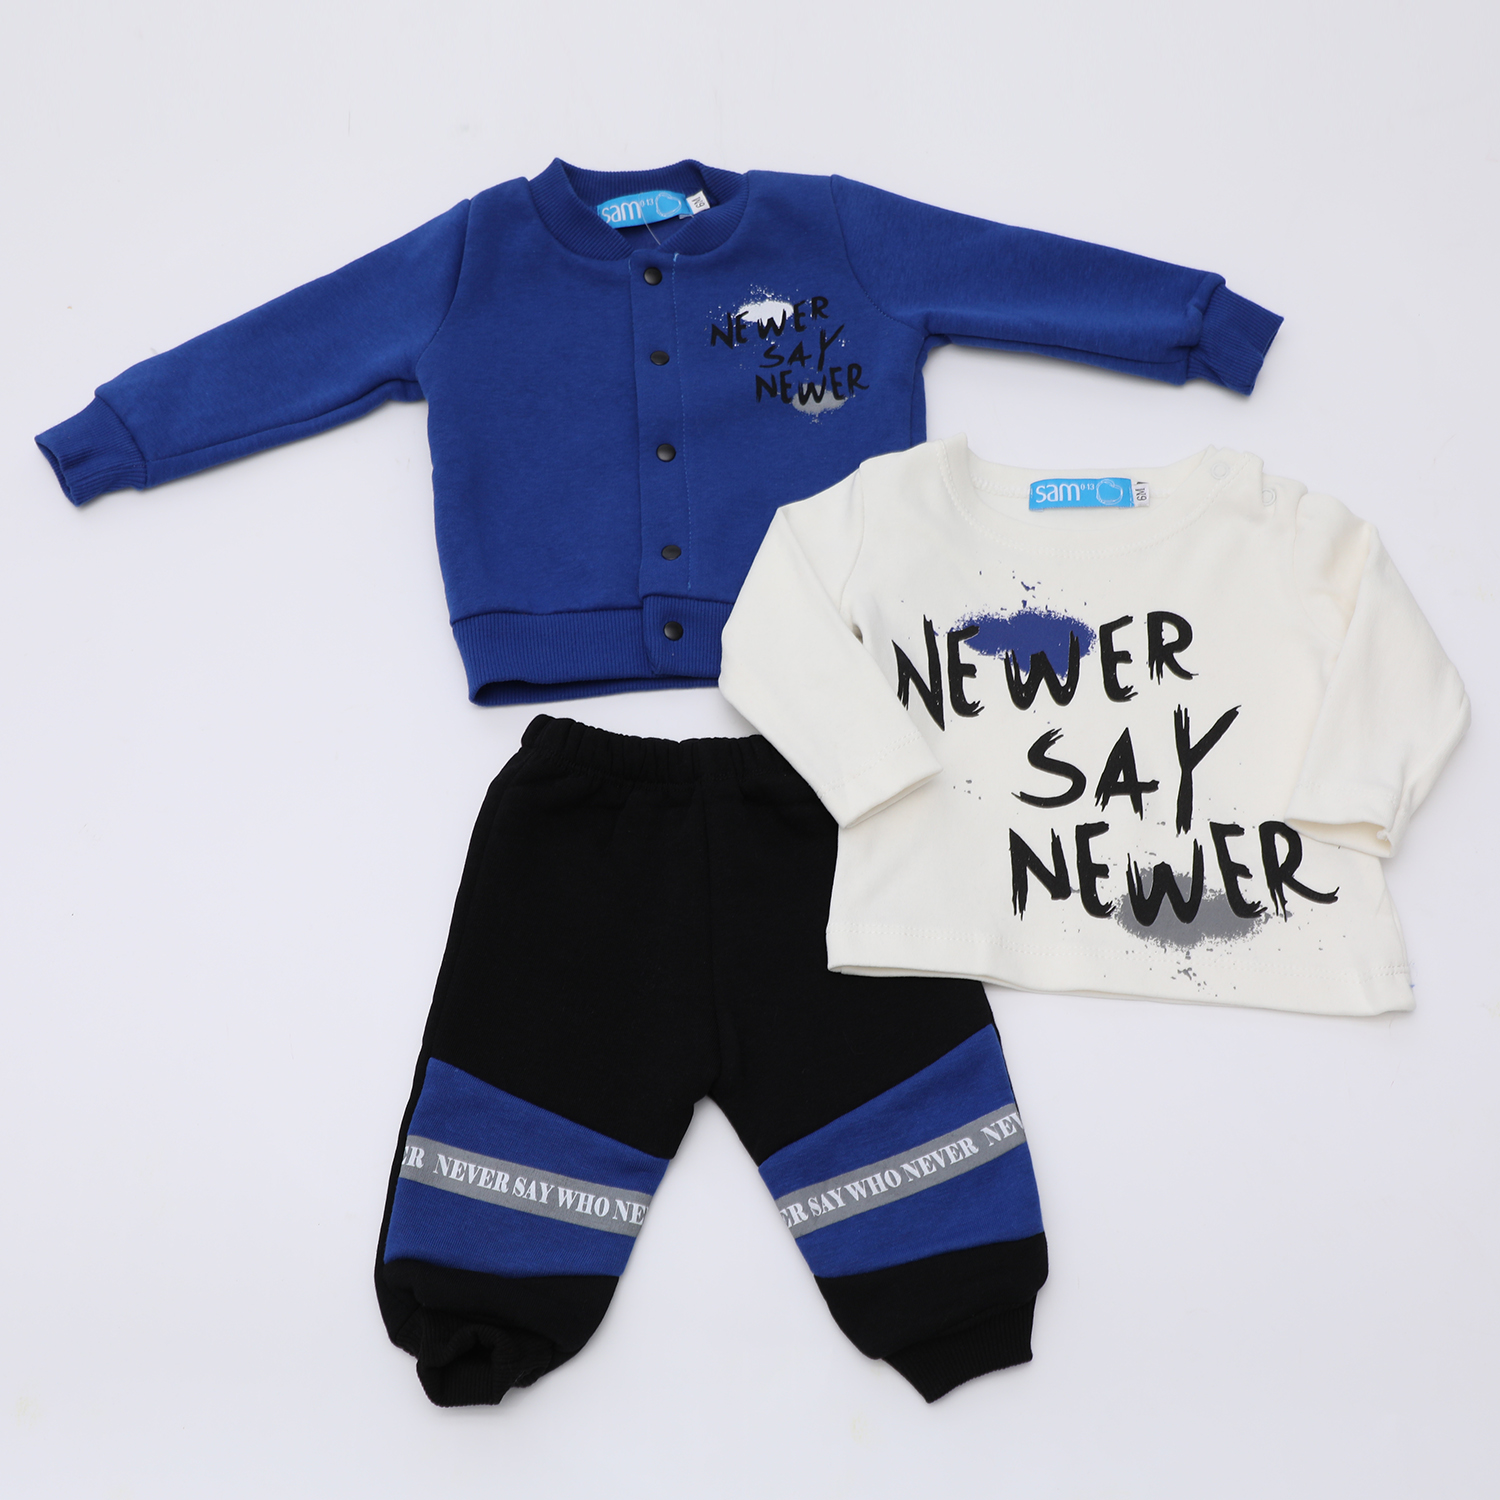 Παιδικά/Baby/Ρούχα/Σετ SAM 0-13 - Βρεφικό σετ από φόρμα μπλούζα και ζακέτα SAM 0-13 NEWER SAY NEWER μπλε μαύρο